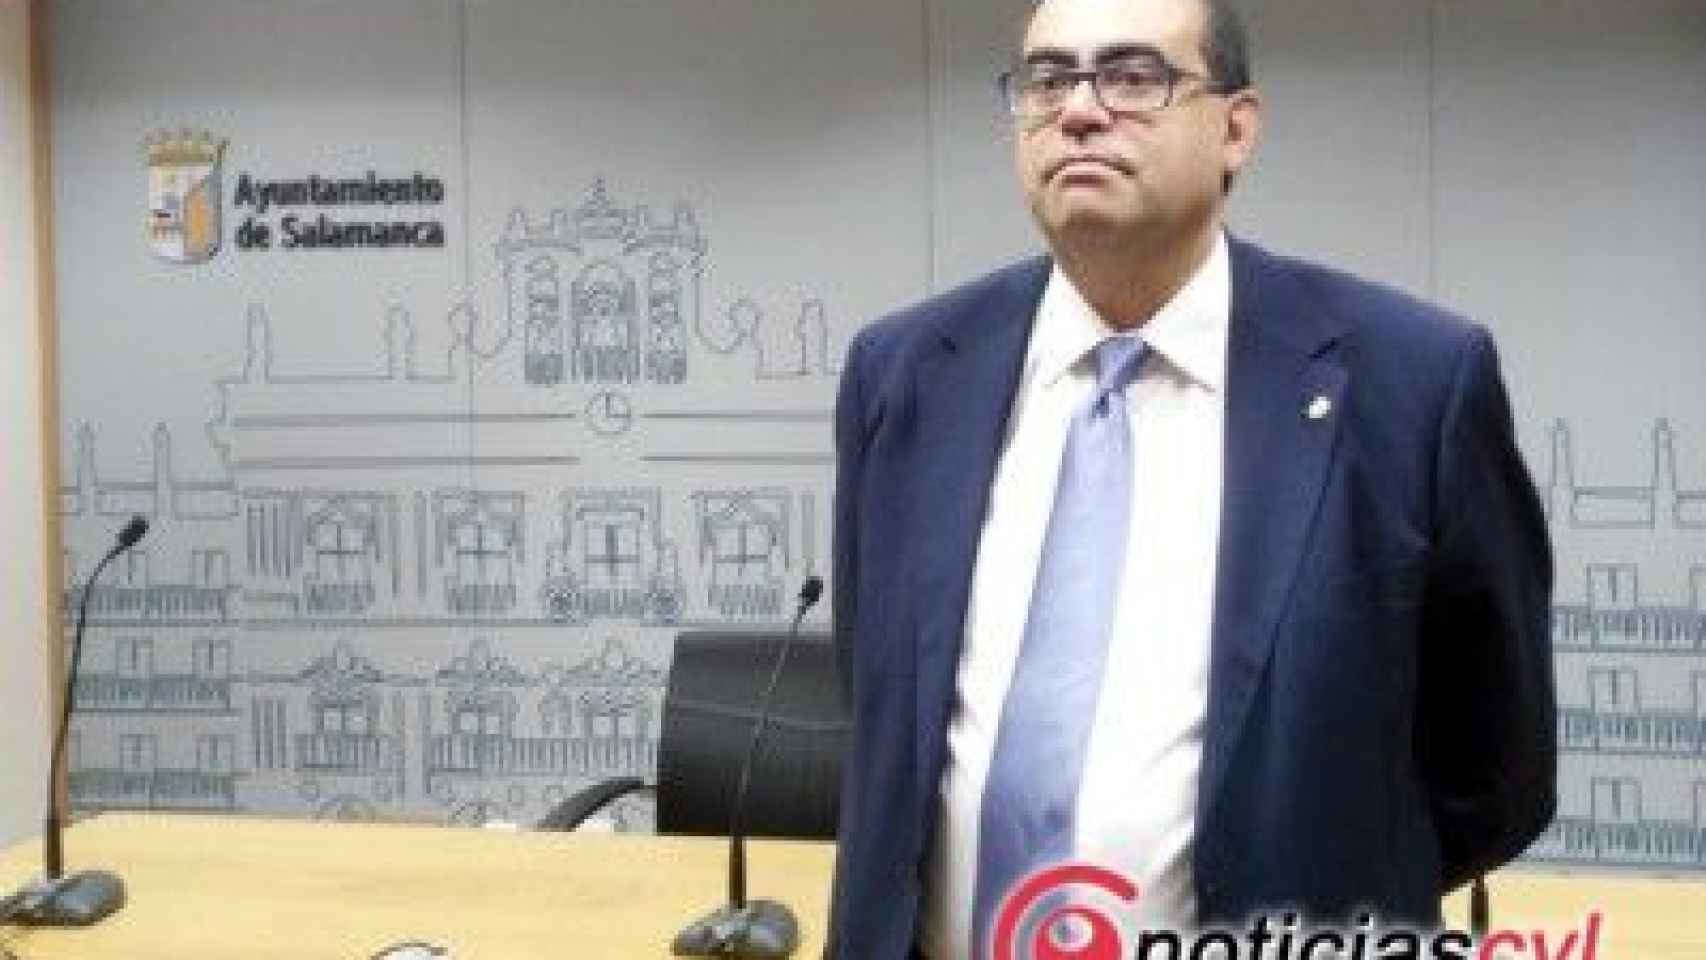 El concejal portavoz del Grupo Popular en el Ayuntamiento de Salamanca, Fernando Rodríguez